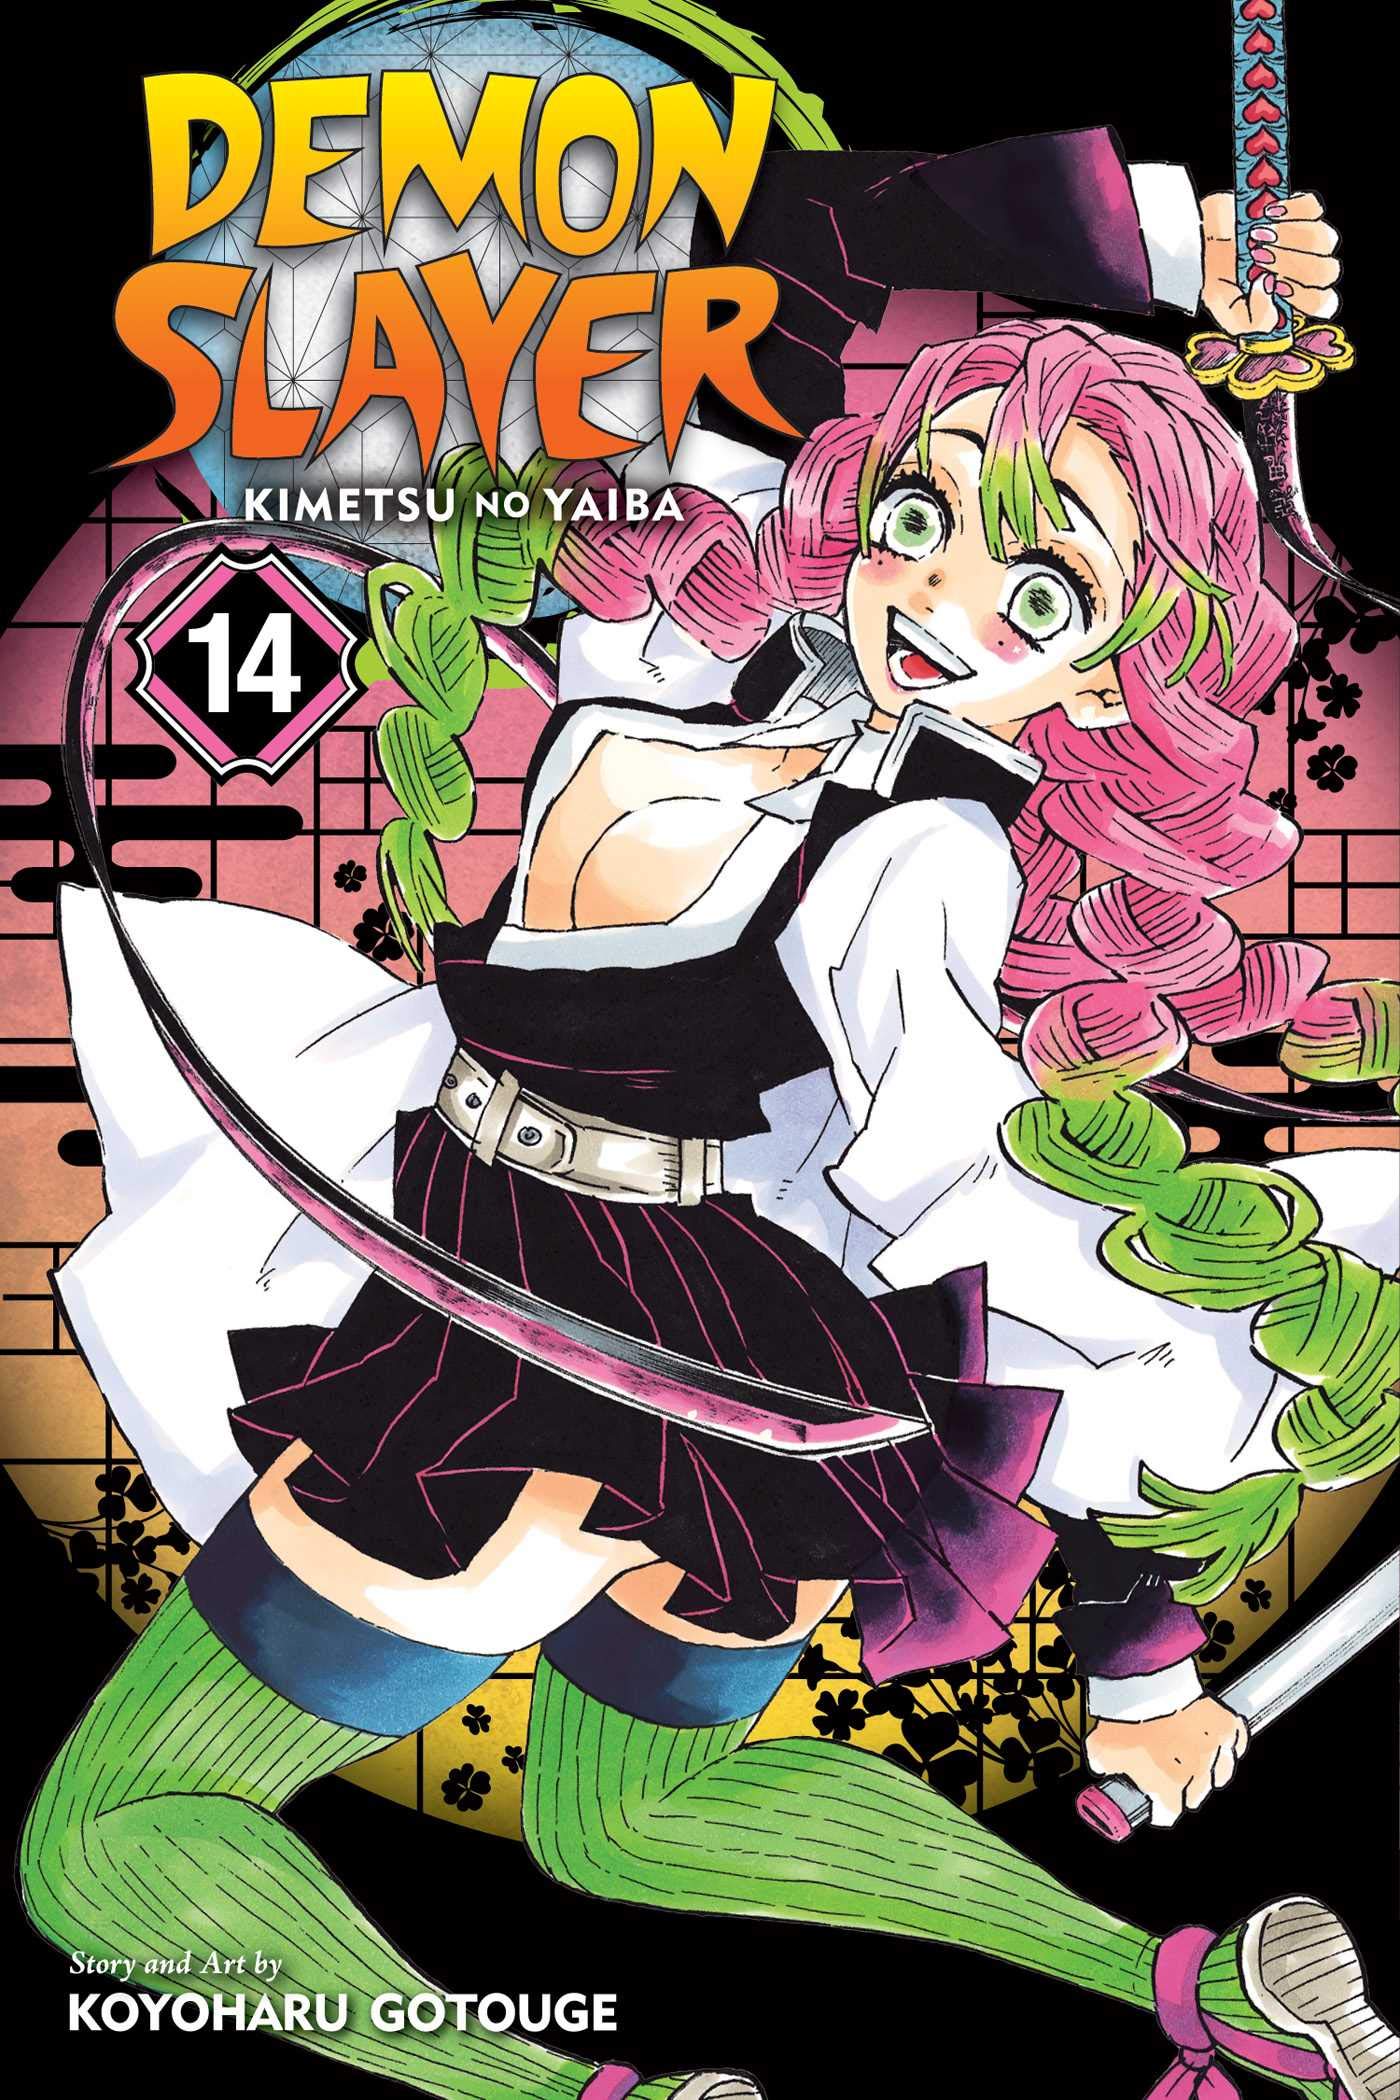 VIZ Media Launches New Manga Series KAGUYA-SAMA: LOVE IS WAR -  MangaMavericks.com